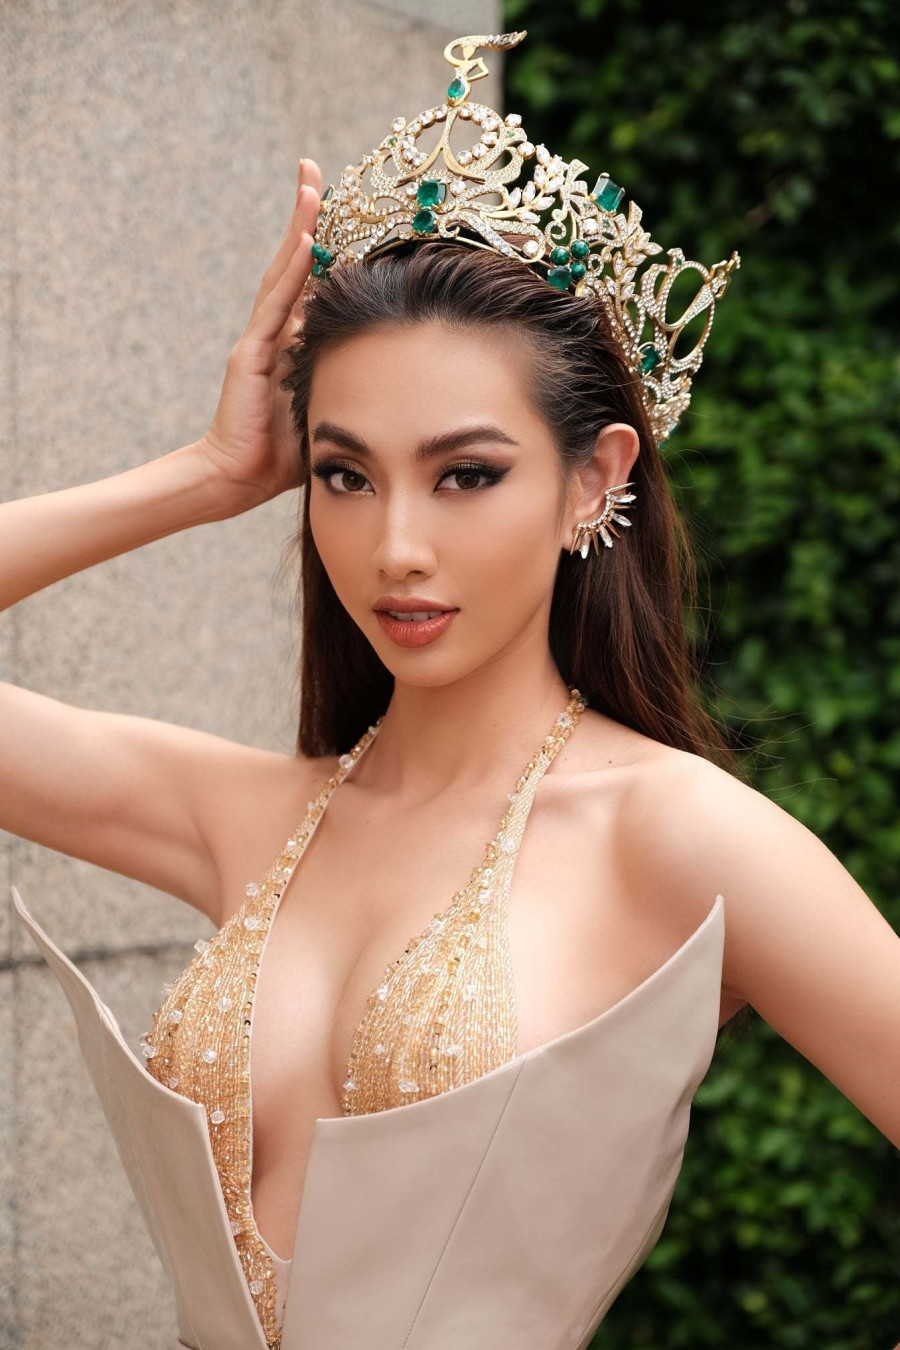 Hoa hậu Thùy Tiên khoe vòng 1 sexy táo bạo sau đăng quang